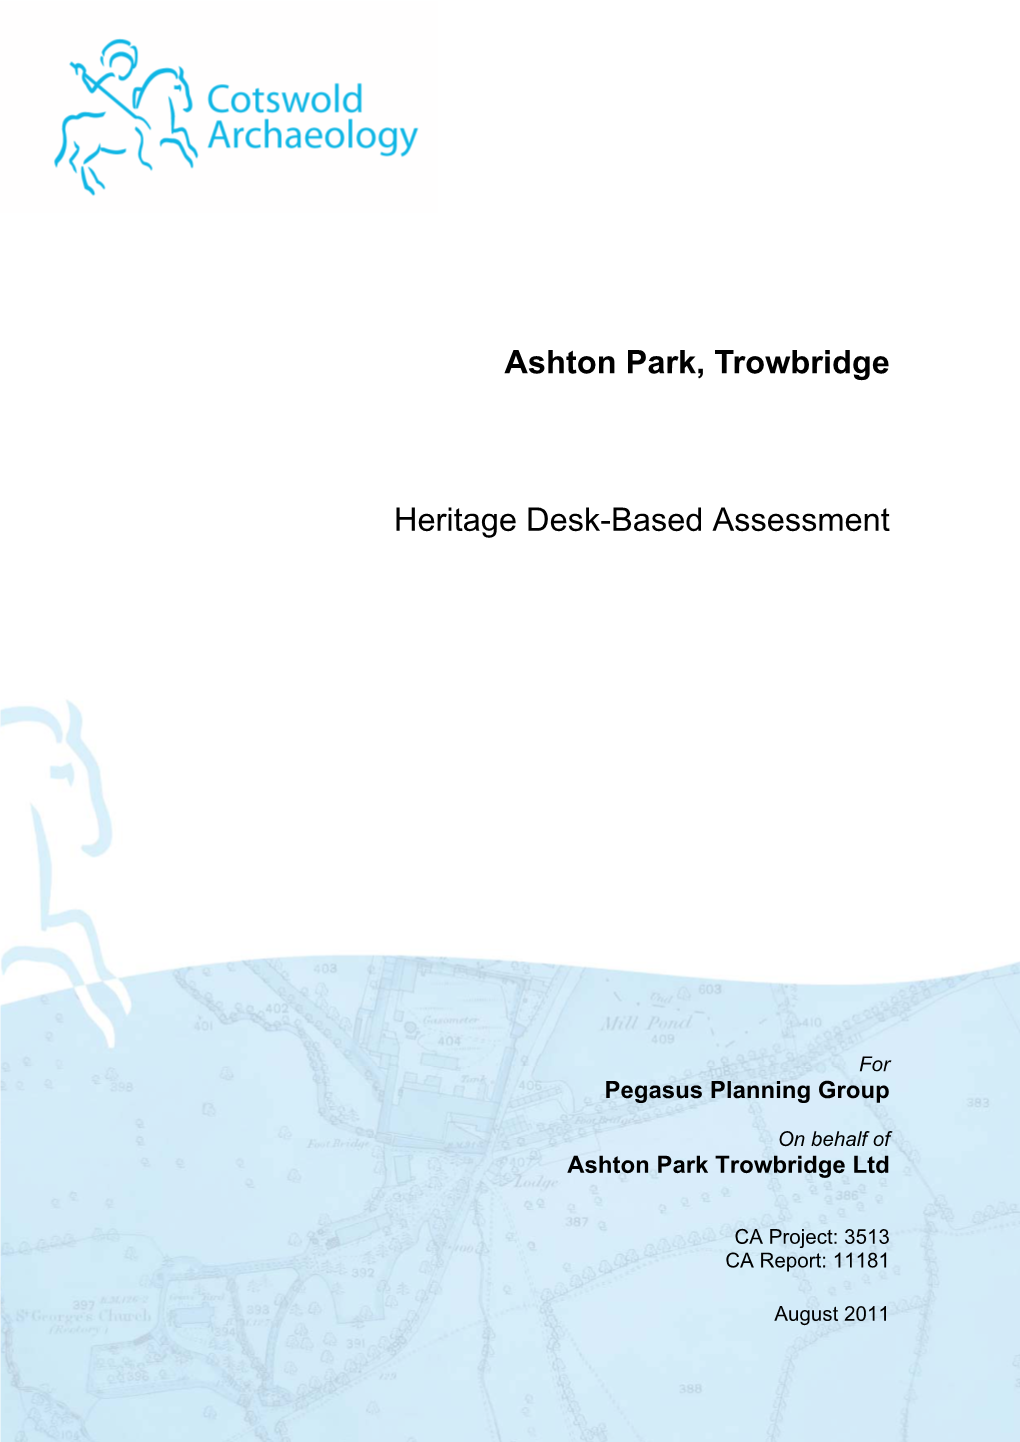 Ashton Park, Trowbridge Heritage Desk-Based Assessment